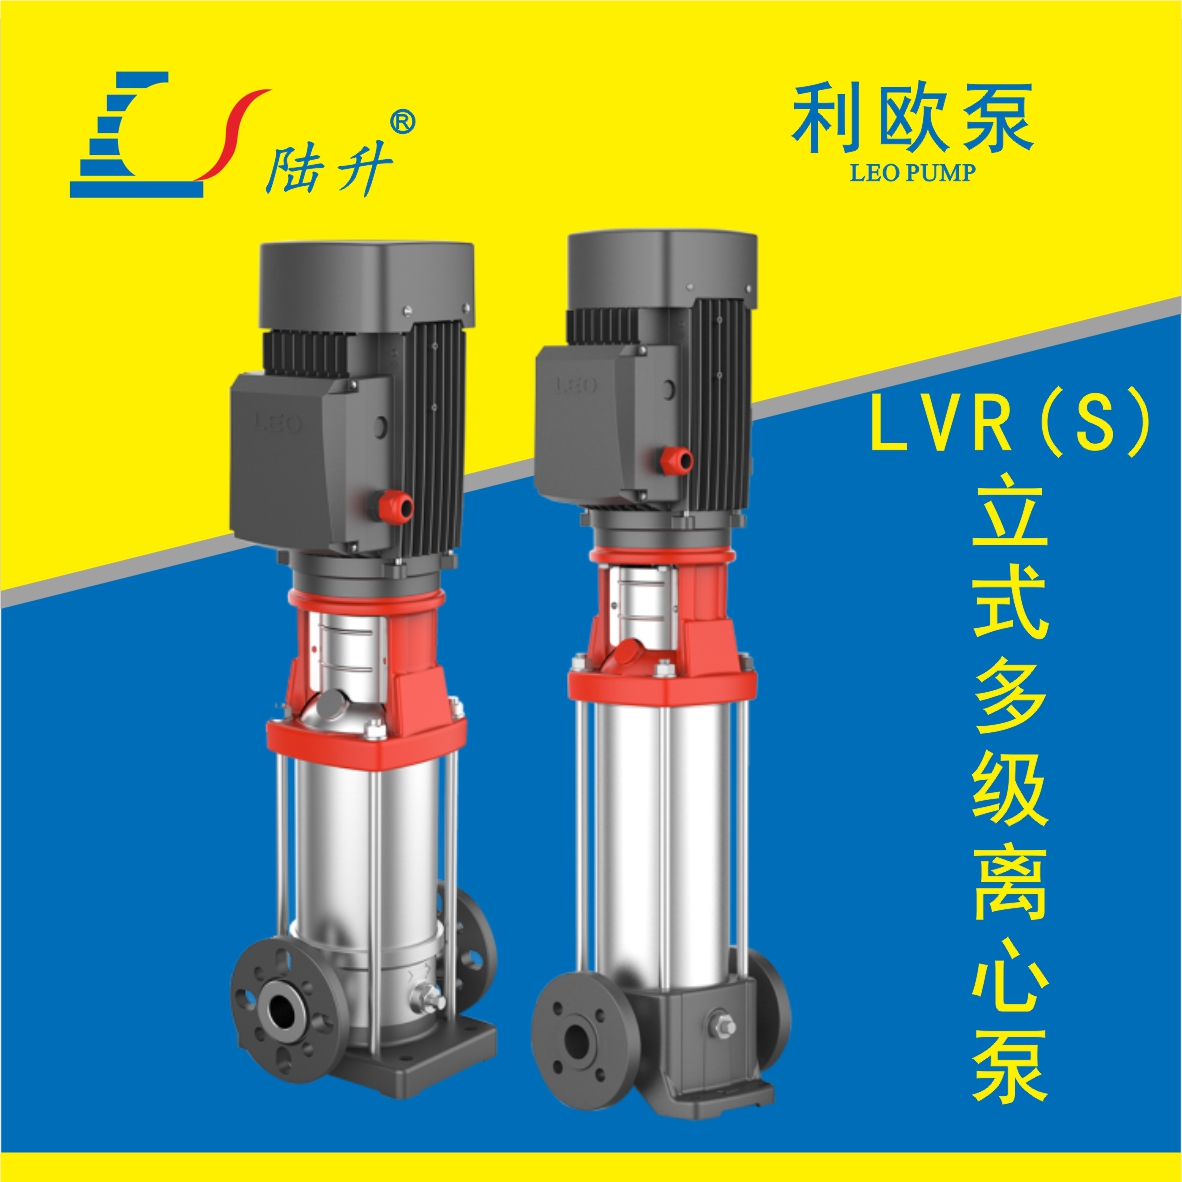 利欧LVR(S)立式多级离心泵